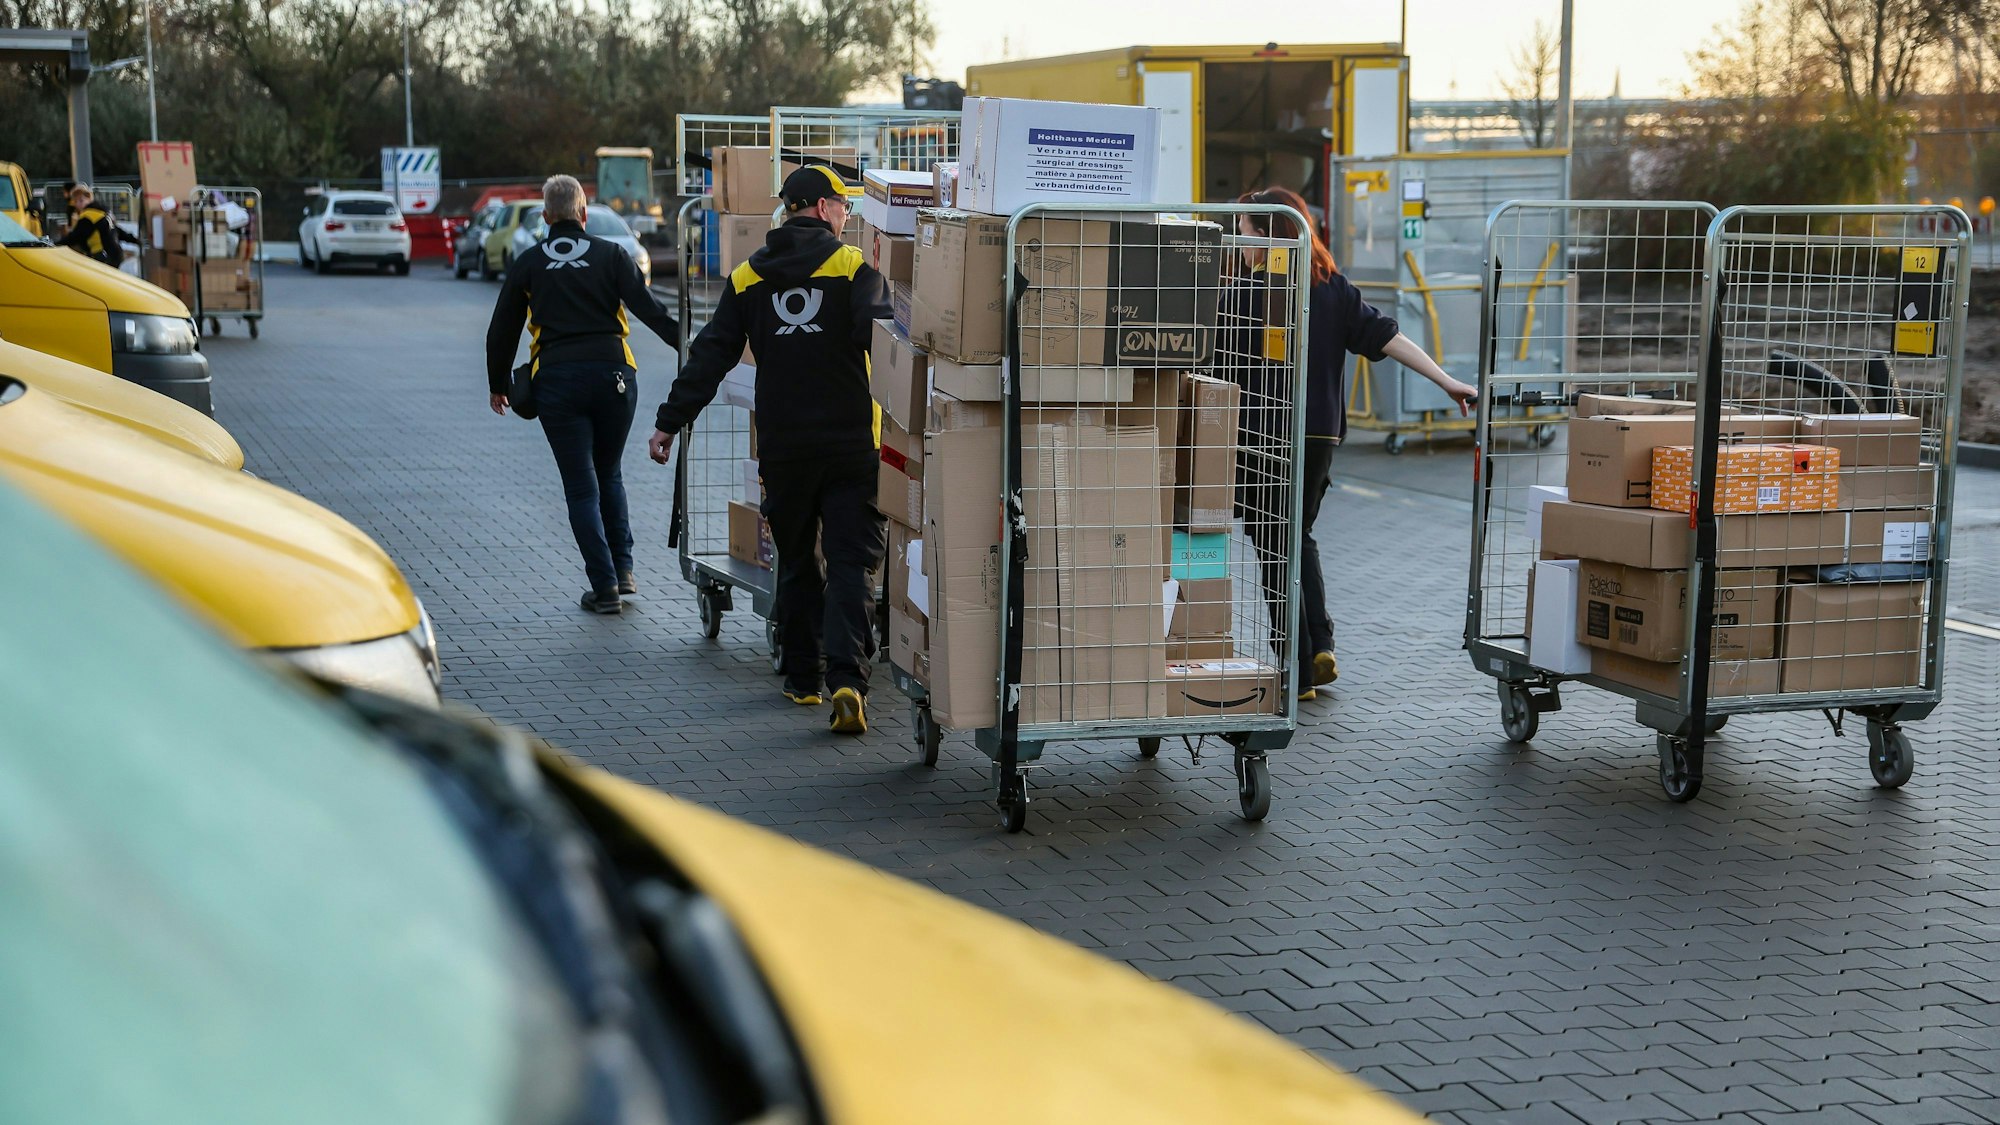 Mitarbeiter und Mitarbeiterinnen der Deutsche Post DHL gehen mit vollen Paketwagen zu ihren Fahrzeug auf dem Hof eines Zustellpunktes. (Archivbild)